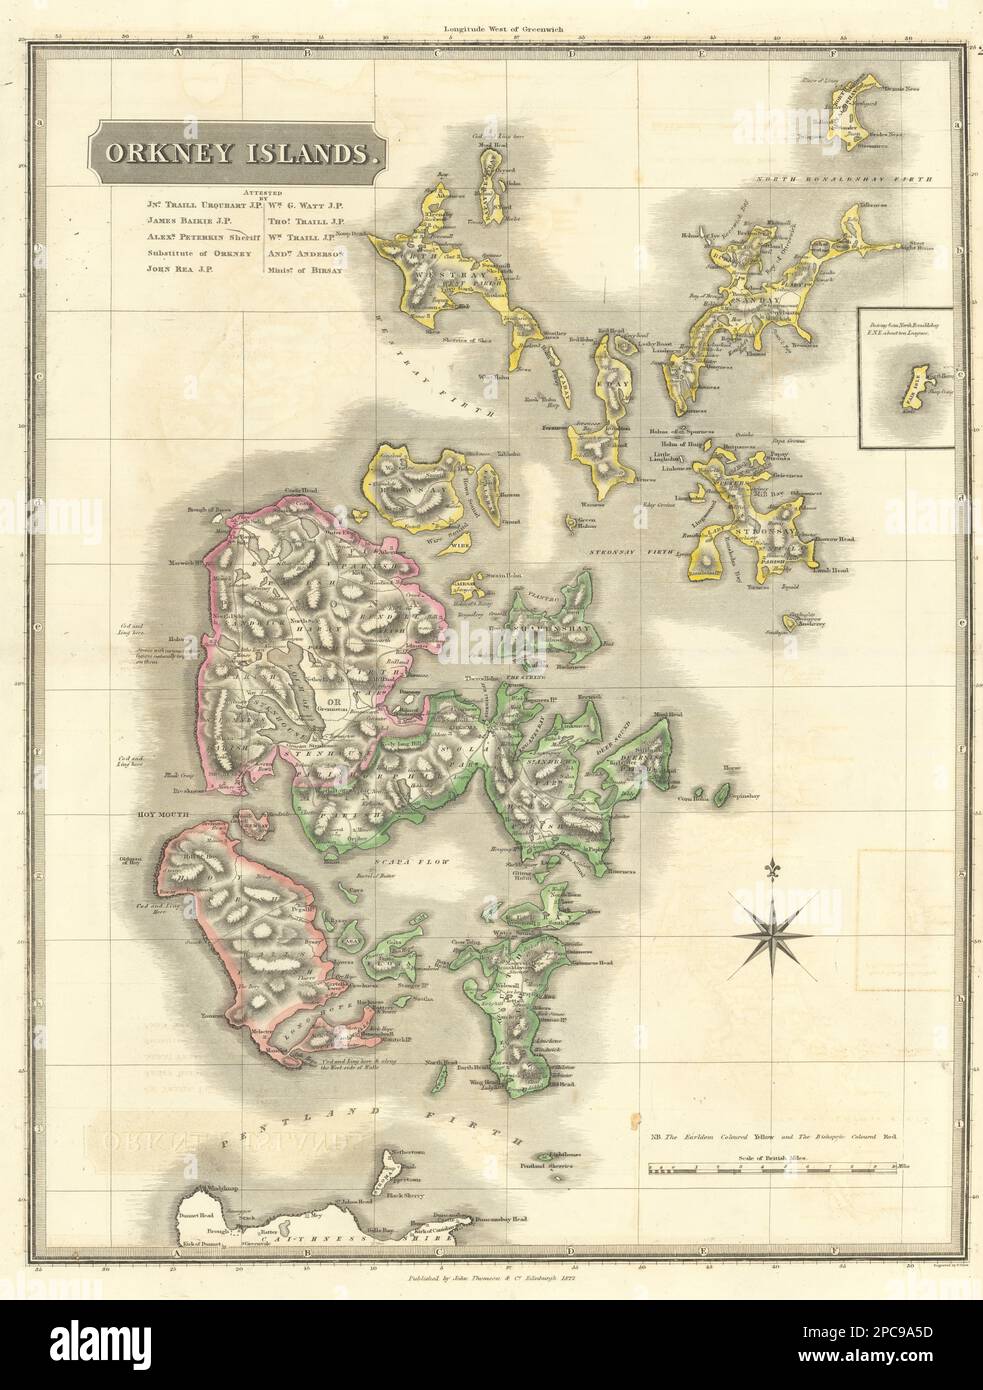 Îles Orkney. Kirkwall. Ecosse. THOMSON 1832 ancien plan de carte ancien Banque D'Images